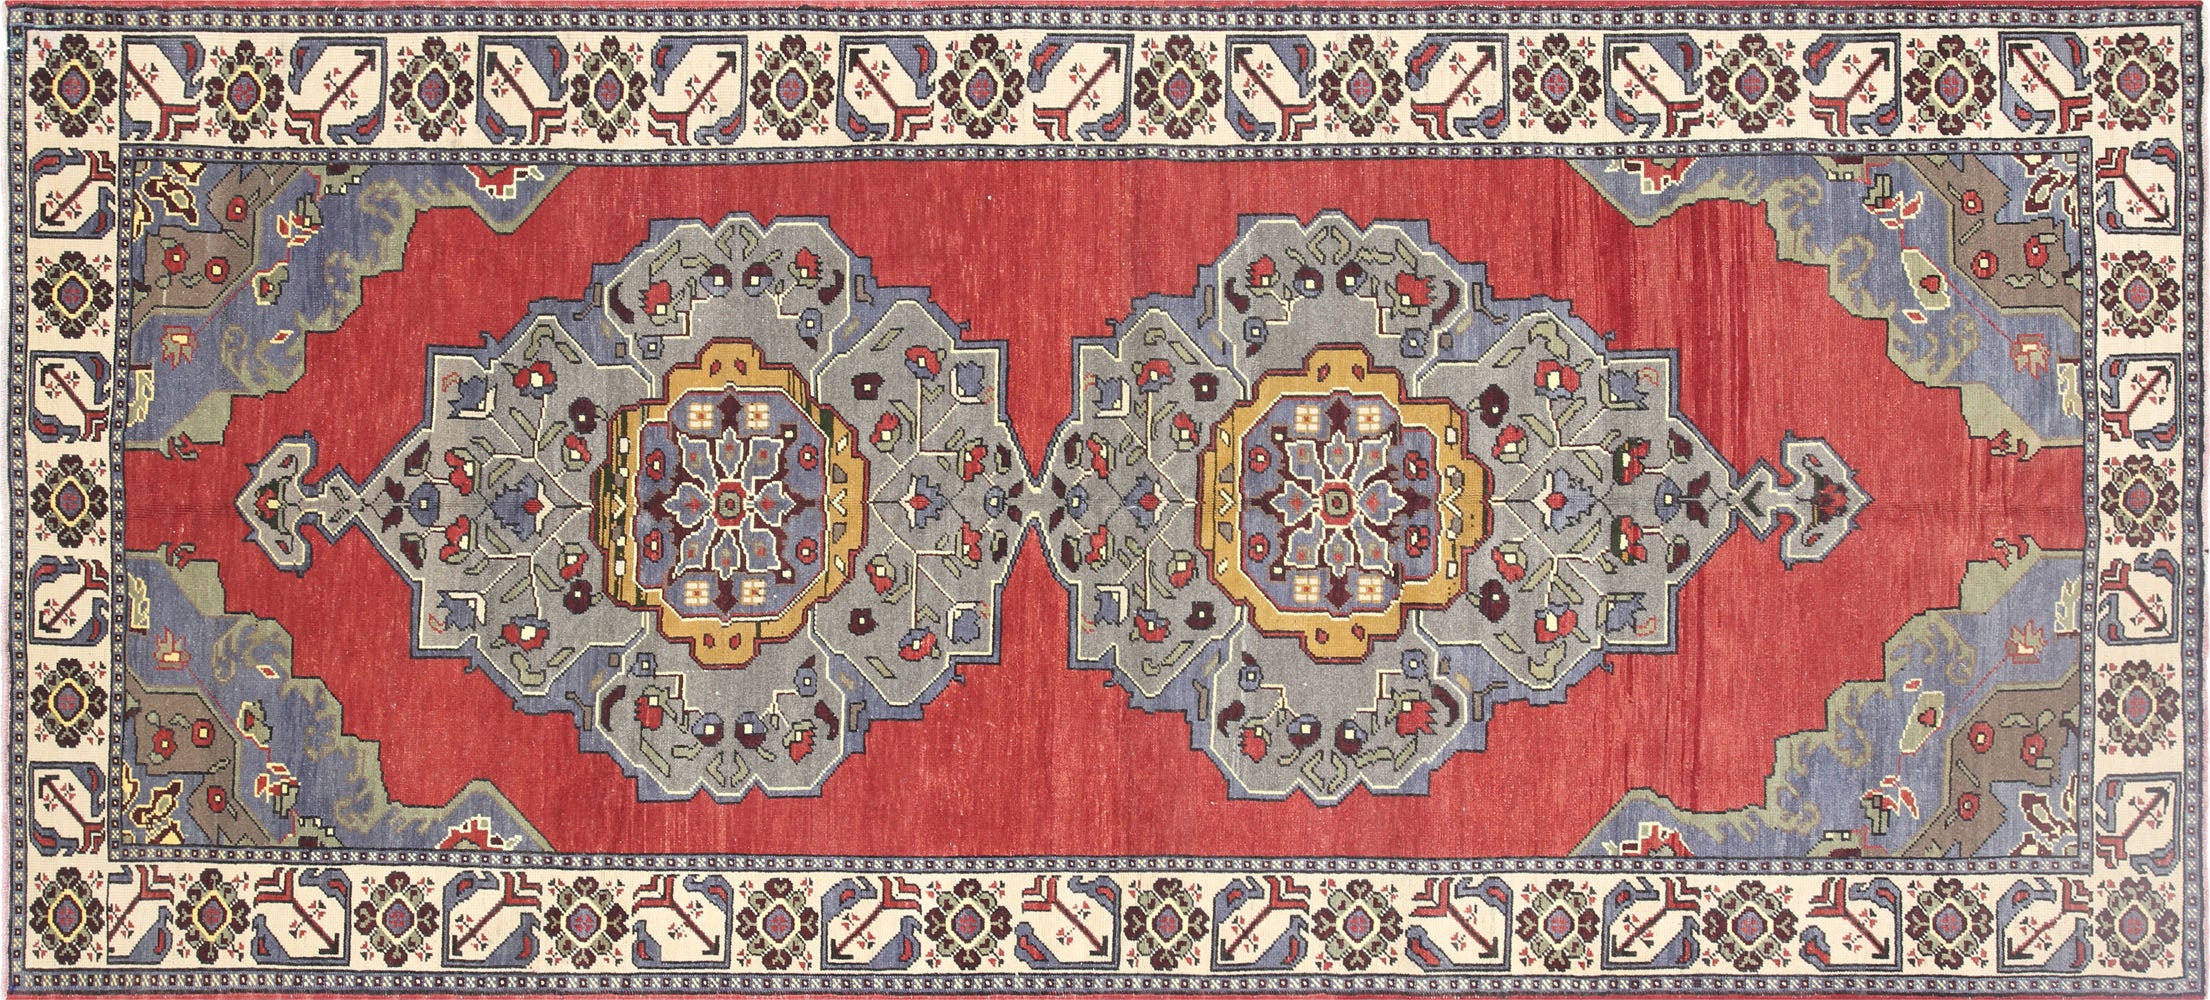 Vintage Turkish Oushak Carpet - 5' x 11'2"